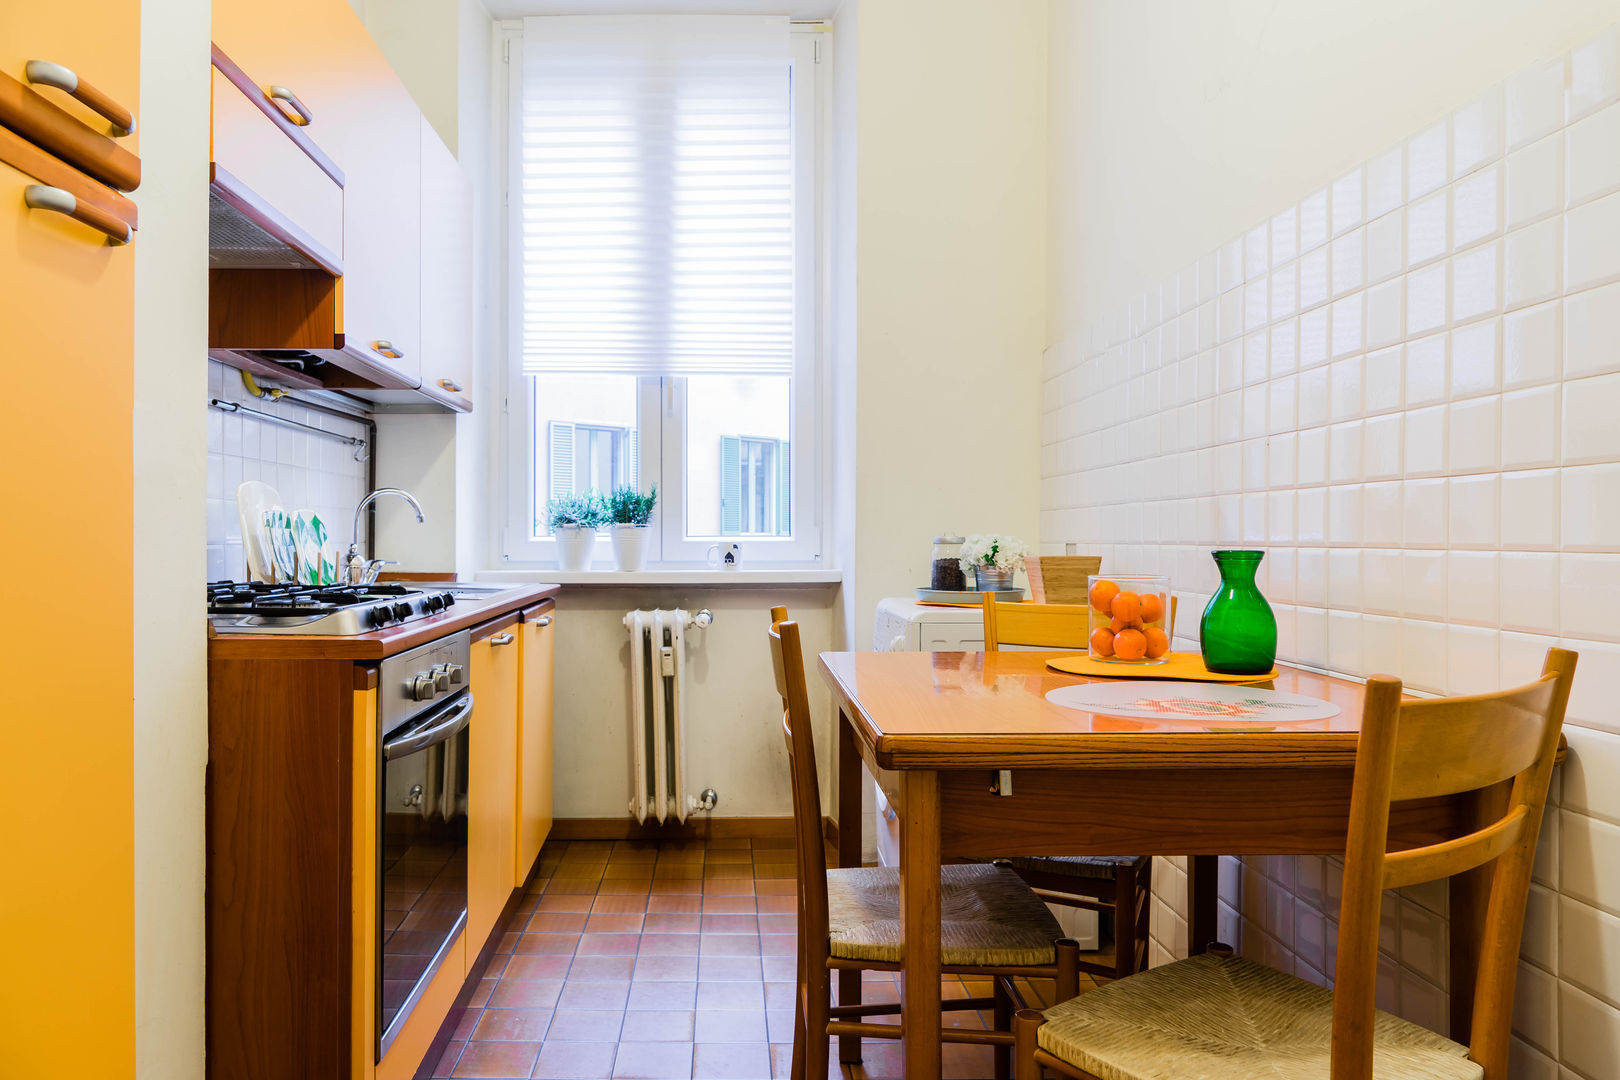 Le stanze di Alice, Francesca Greco - HOME|Philosophy Francesca Greco - HOME|Philosophy Kitchen